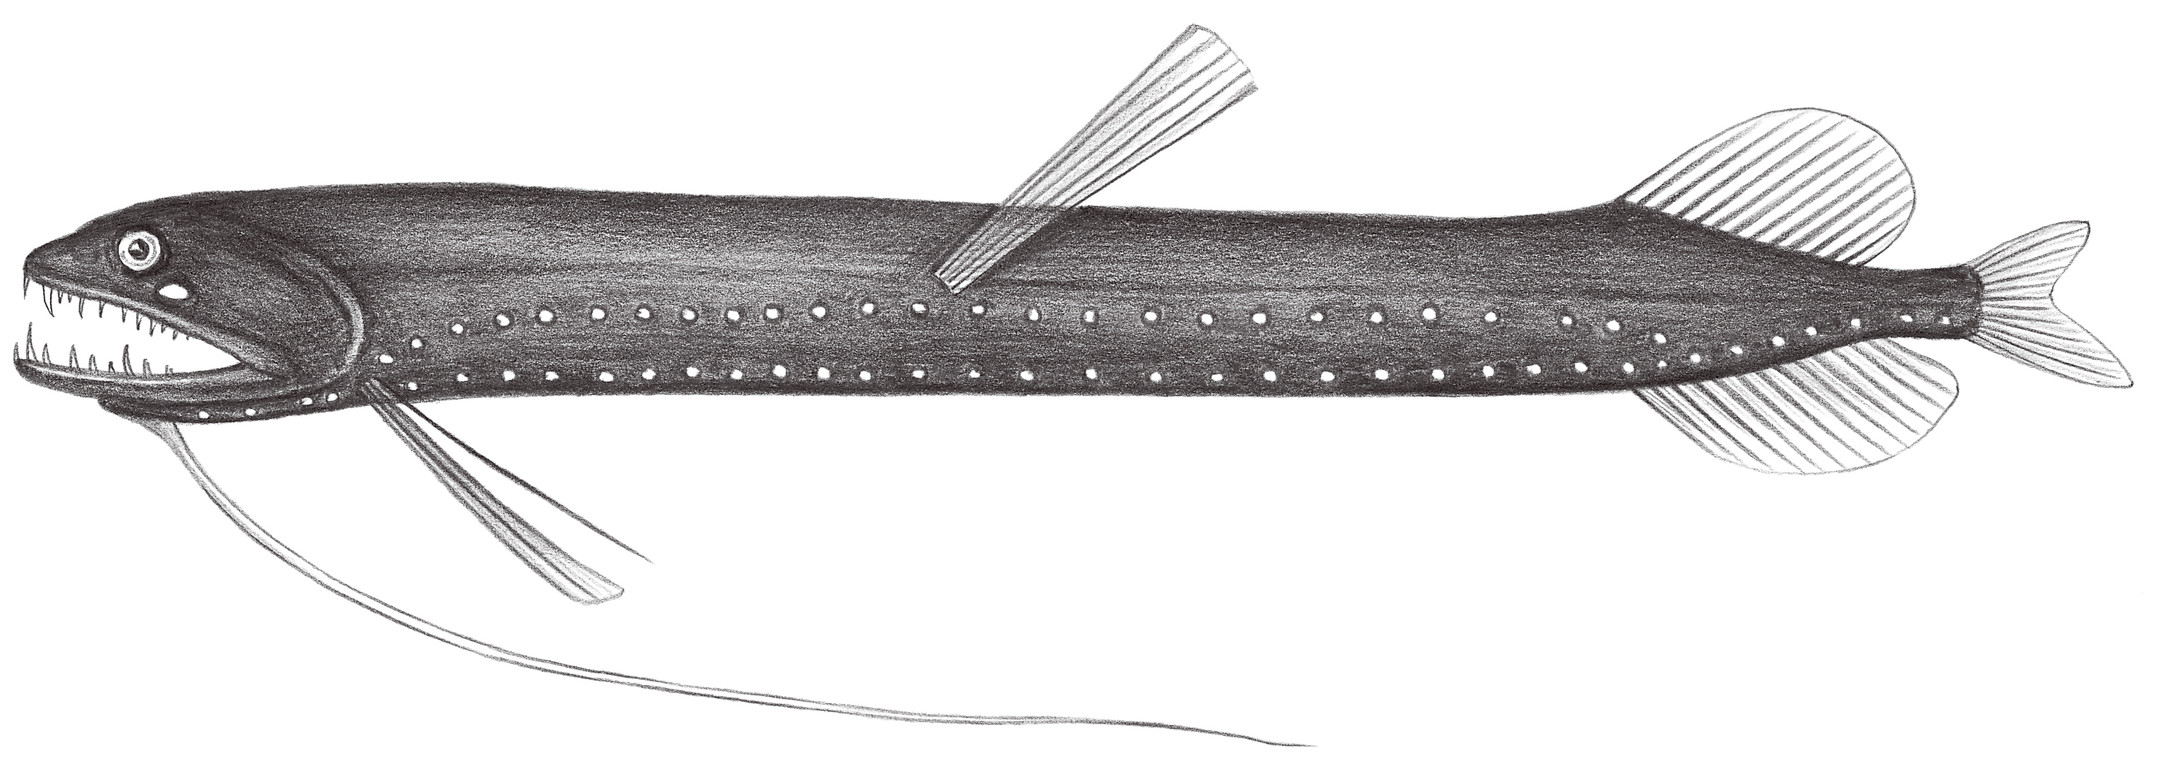 442.	四絲深巨口魚 Bathophilus kingi Barnett & Gibbs, 1968